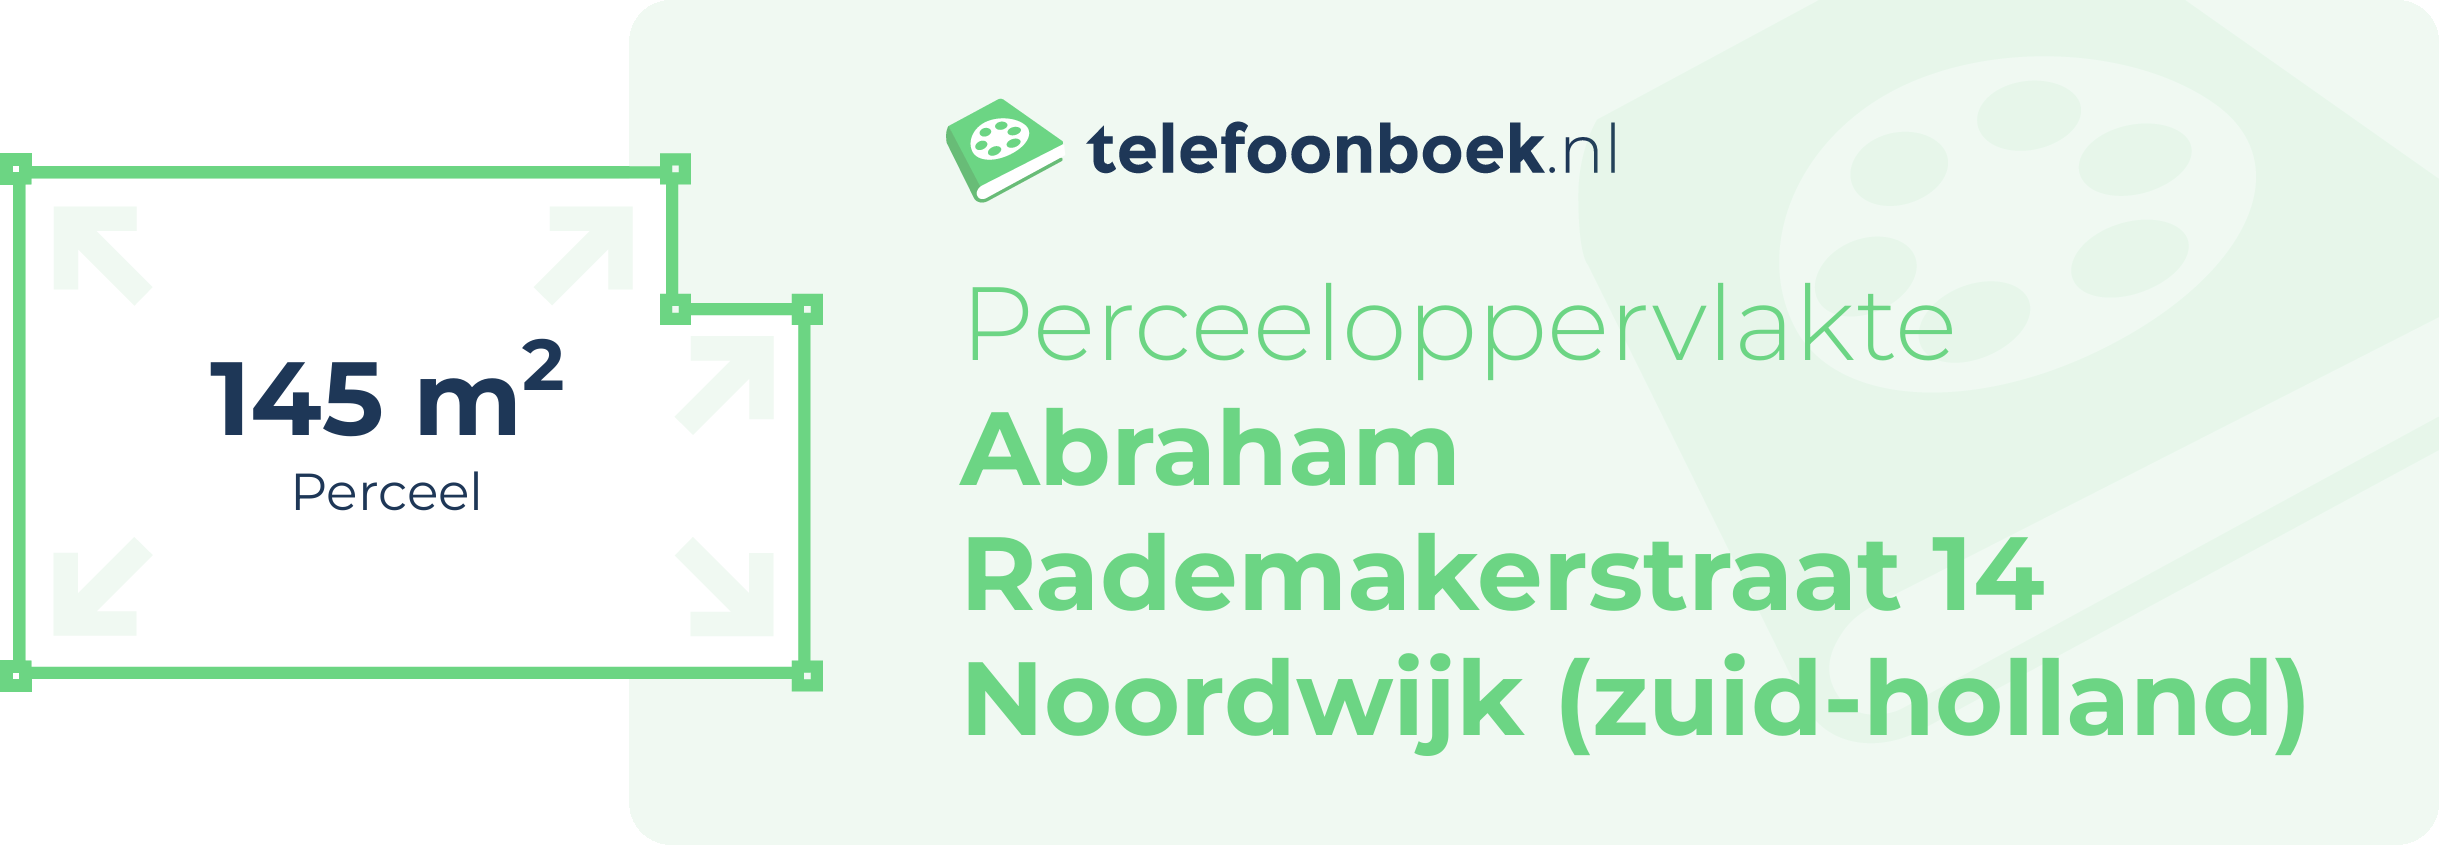 Perceeloppervlakte Abraham Rademakerstraat 14 Noordwijk (Zuid-Holland)